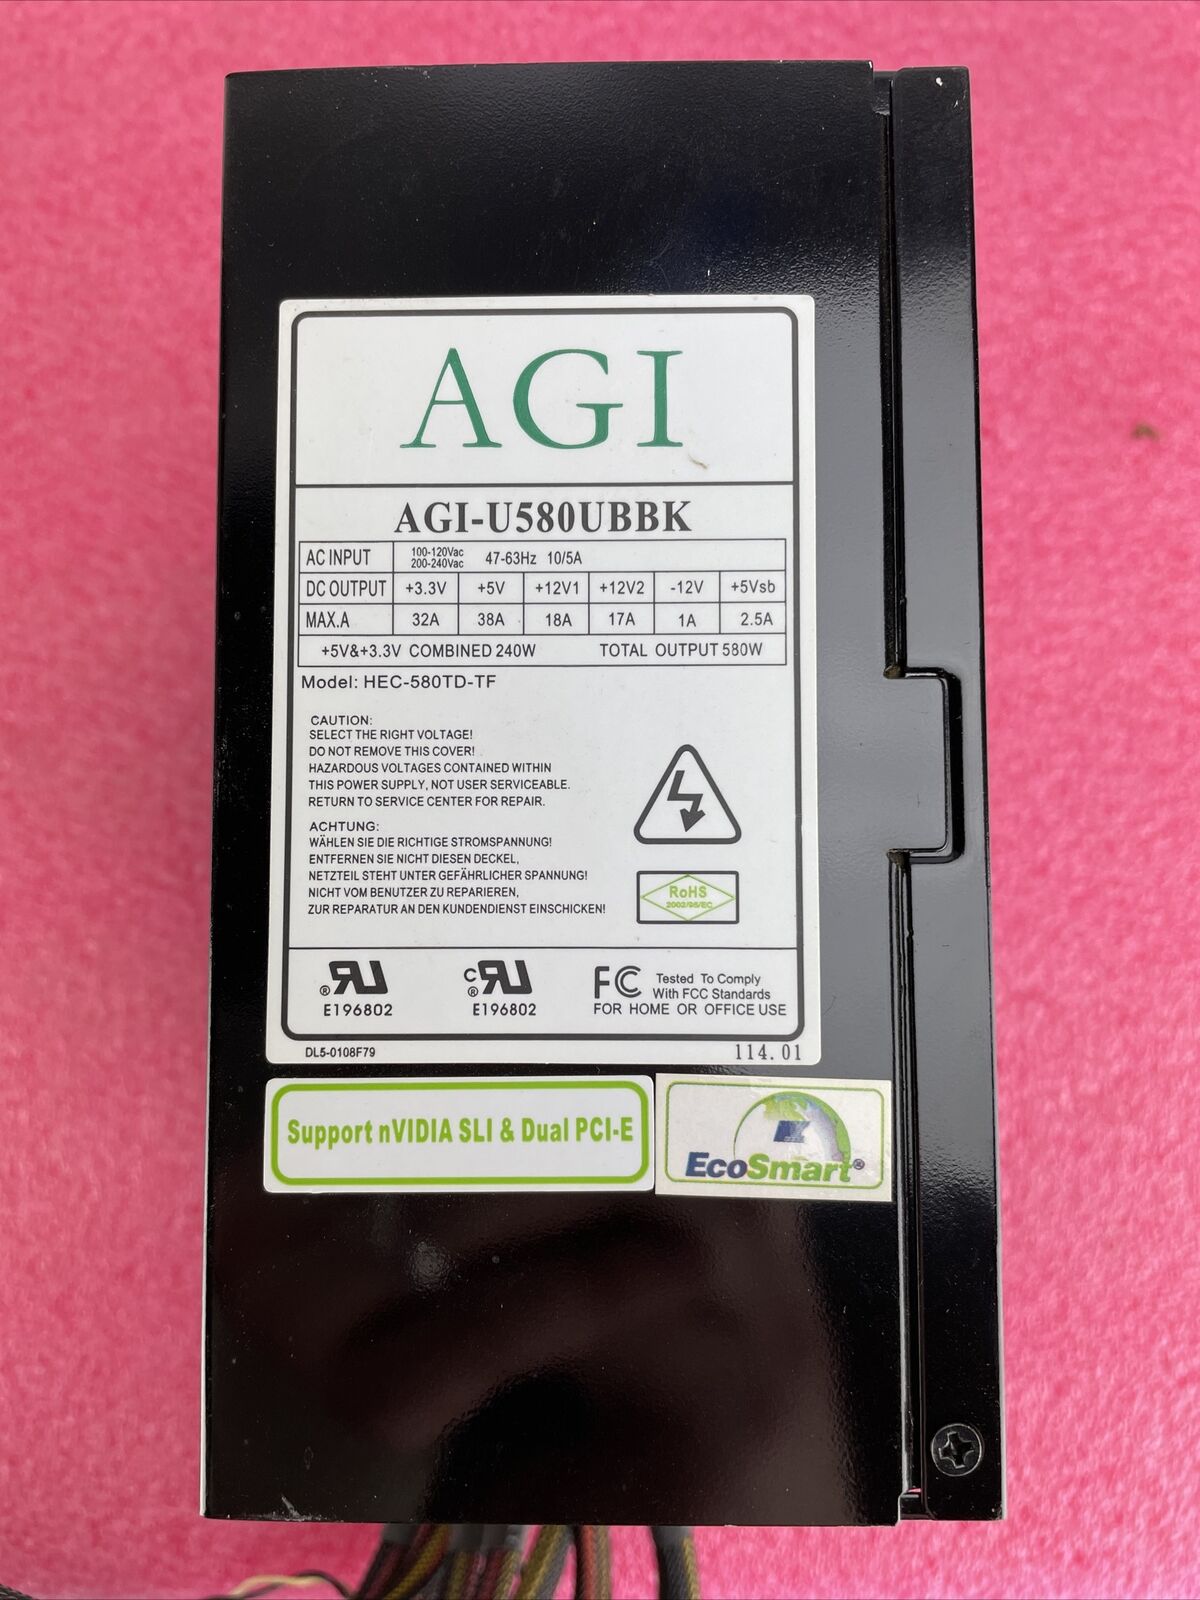 AGI AGI-U580UBK 580W Power Supply